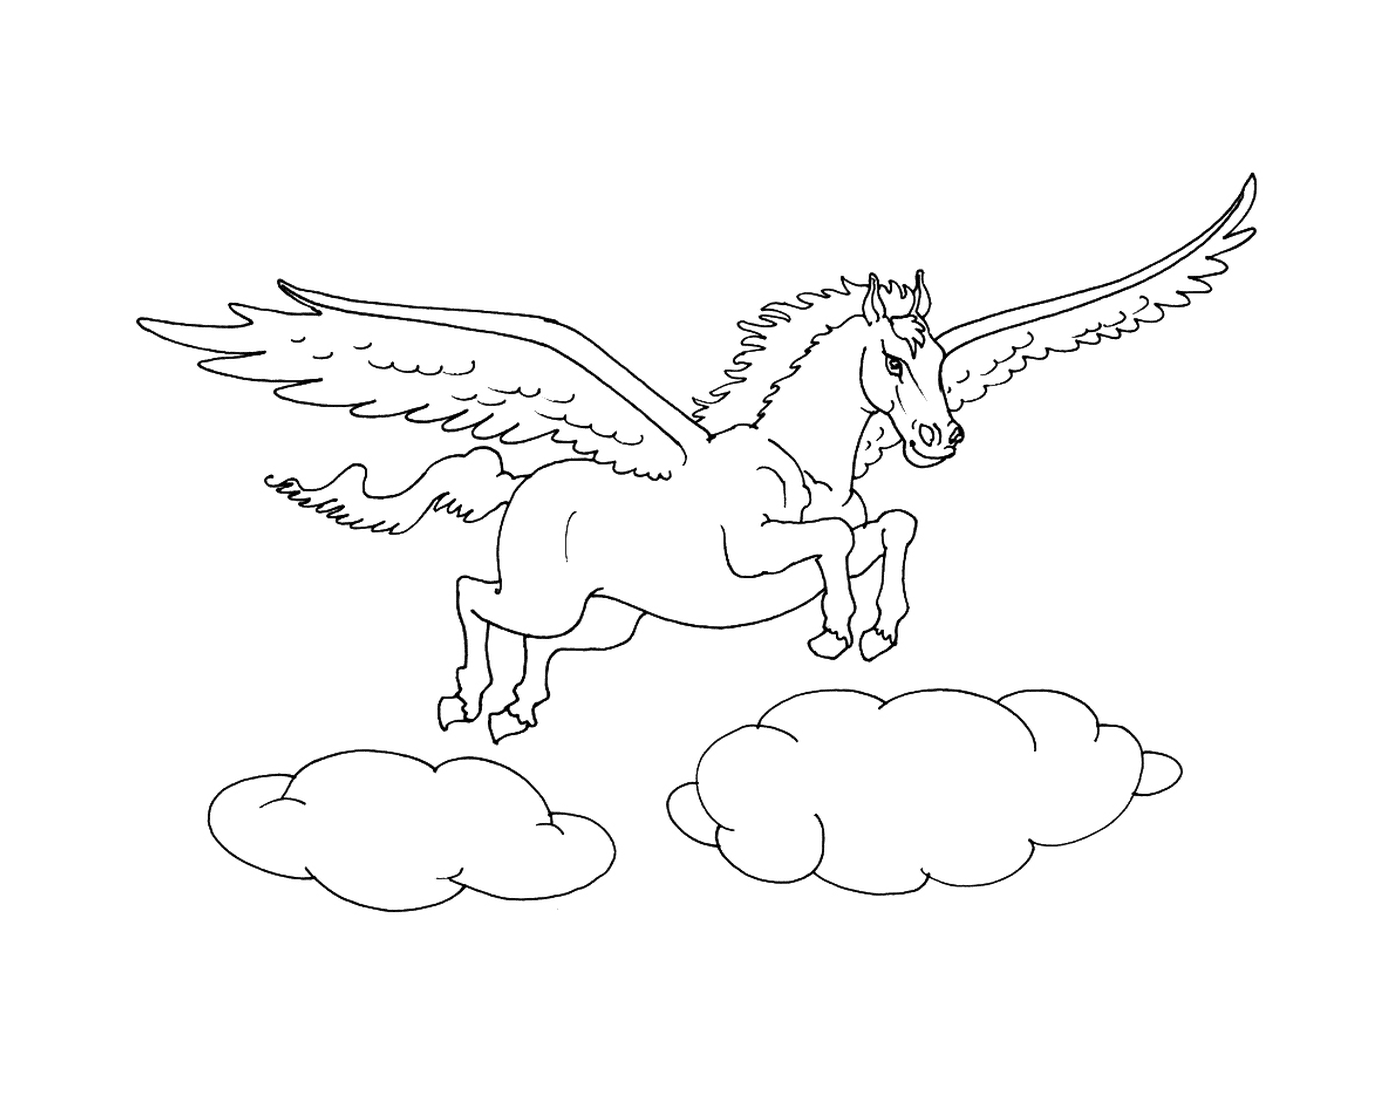  बादल पर उड़ते हुए घोड़ा 